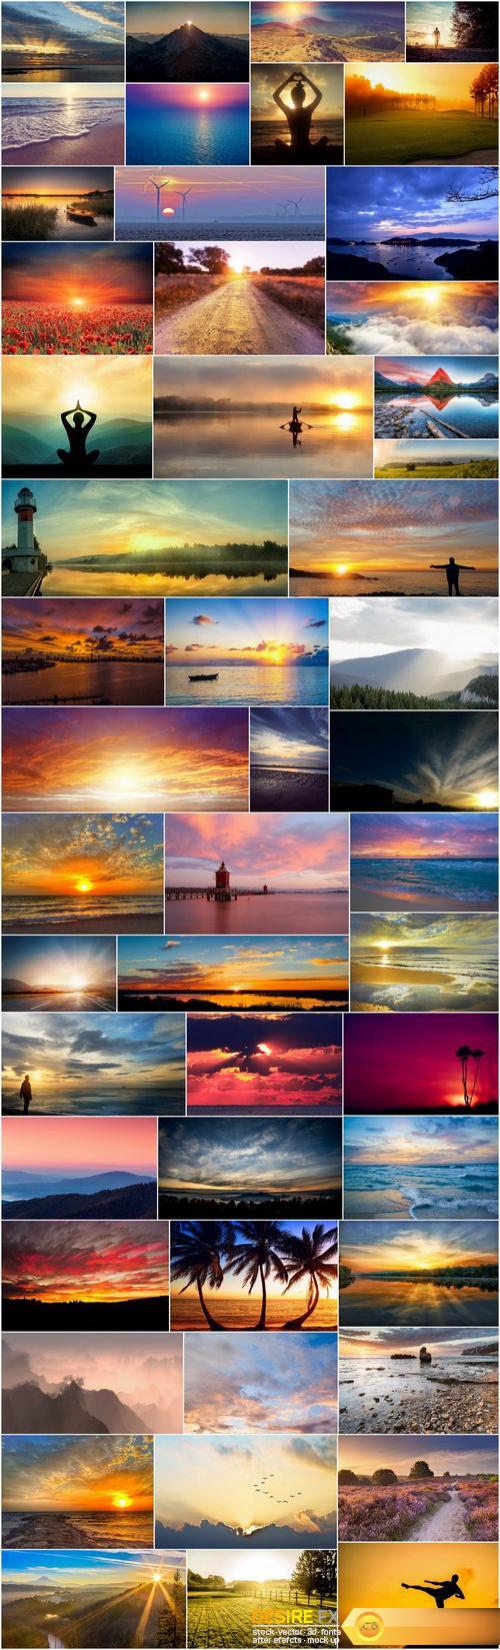 Beautiful sunsets and sunrises - 50xUHQ JPEG